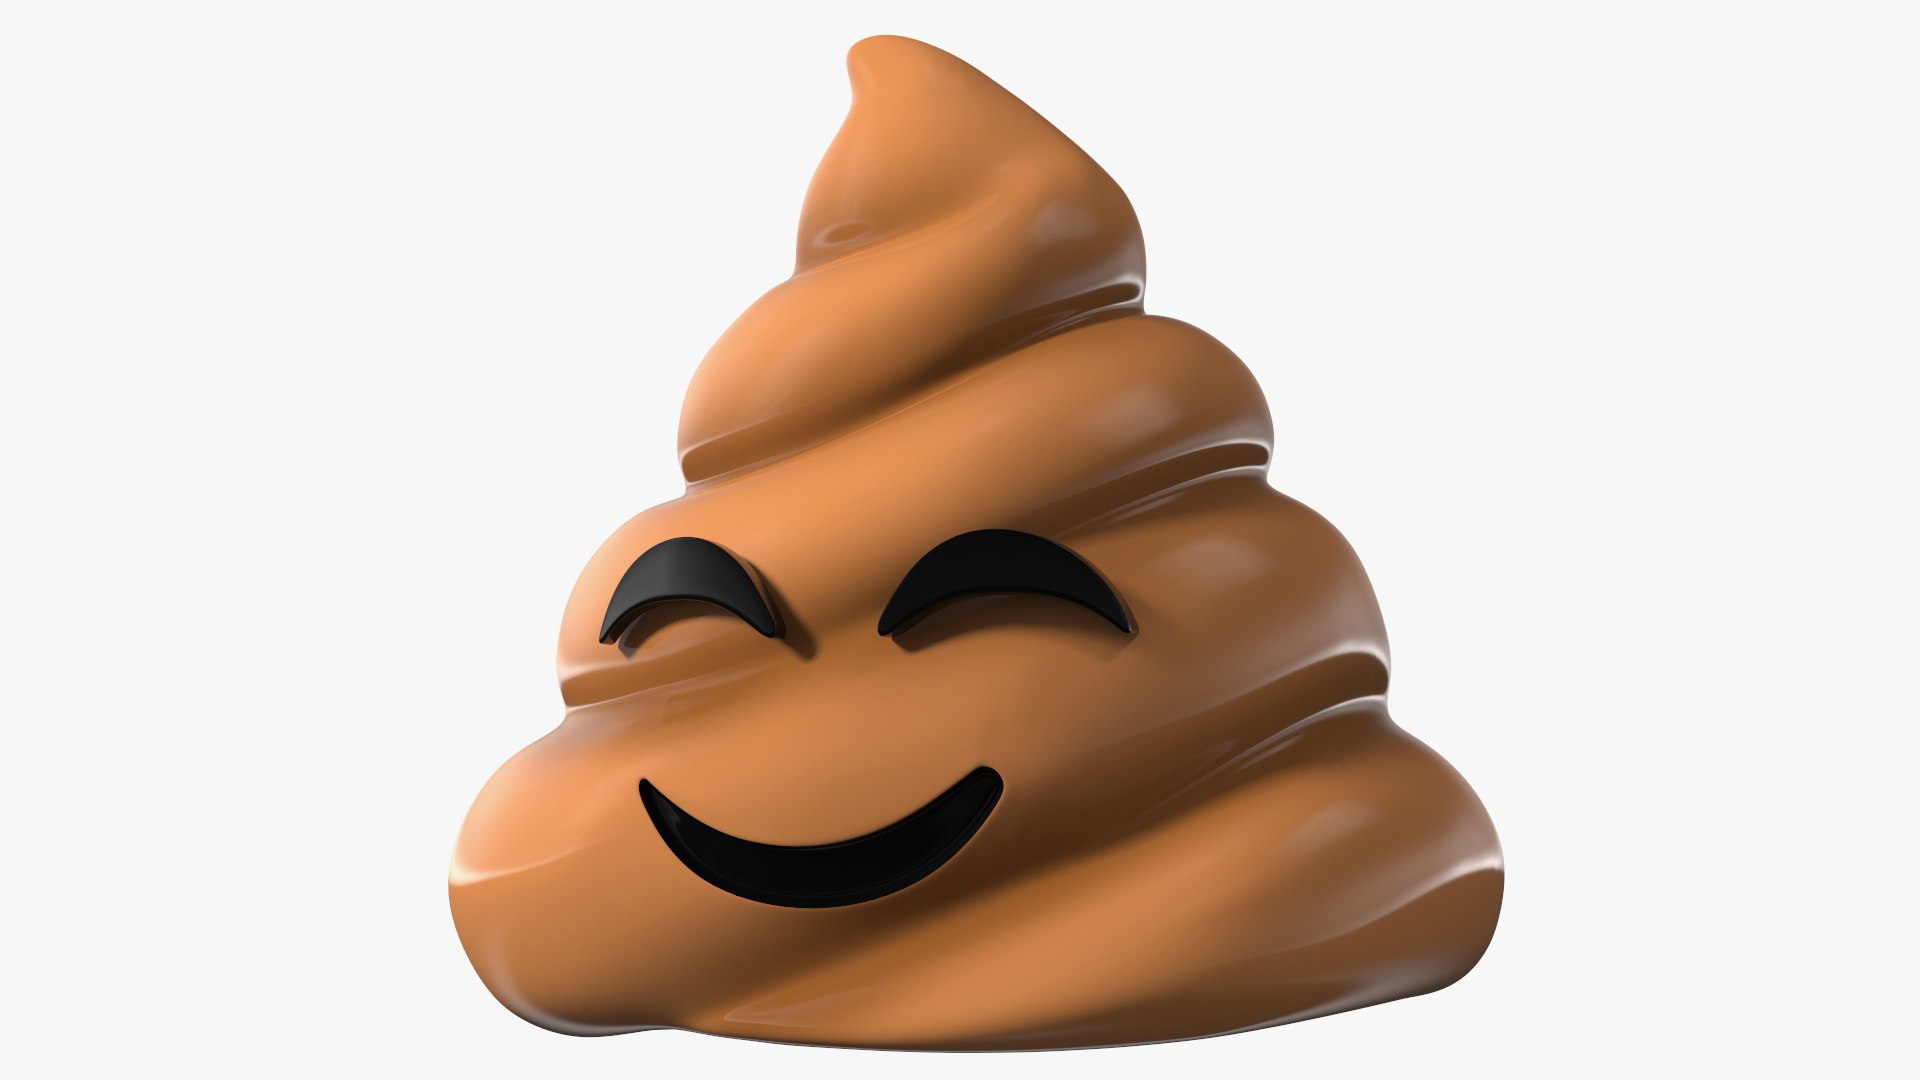 3D Smiling Faces Poop Emoji Collection - TurboSquid 1842536